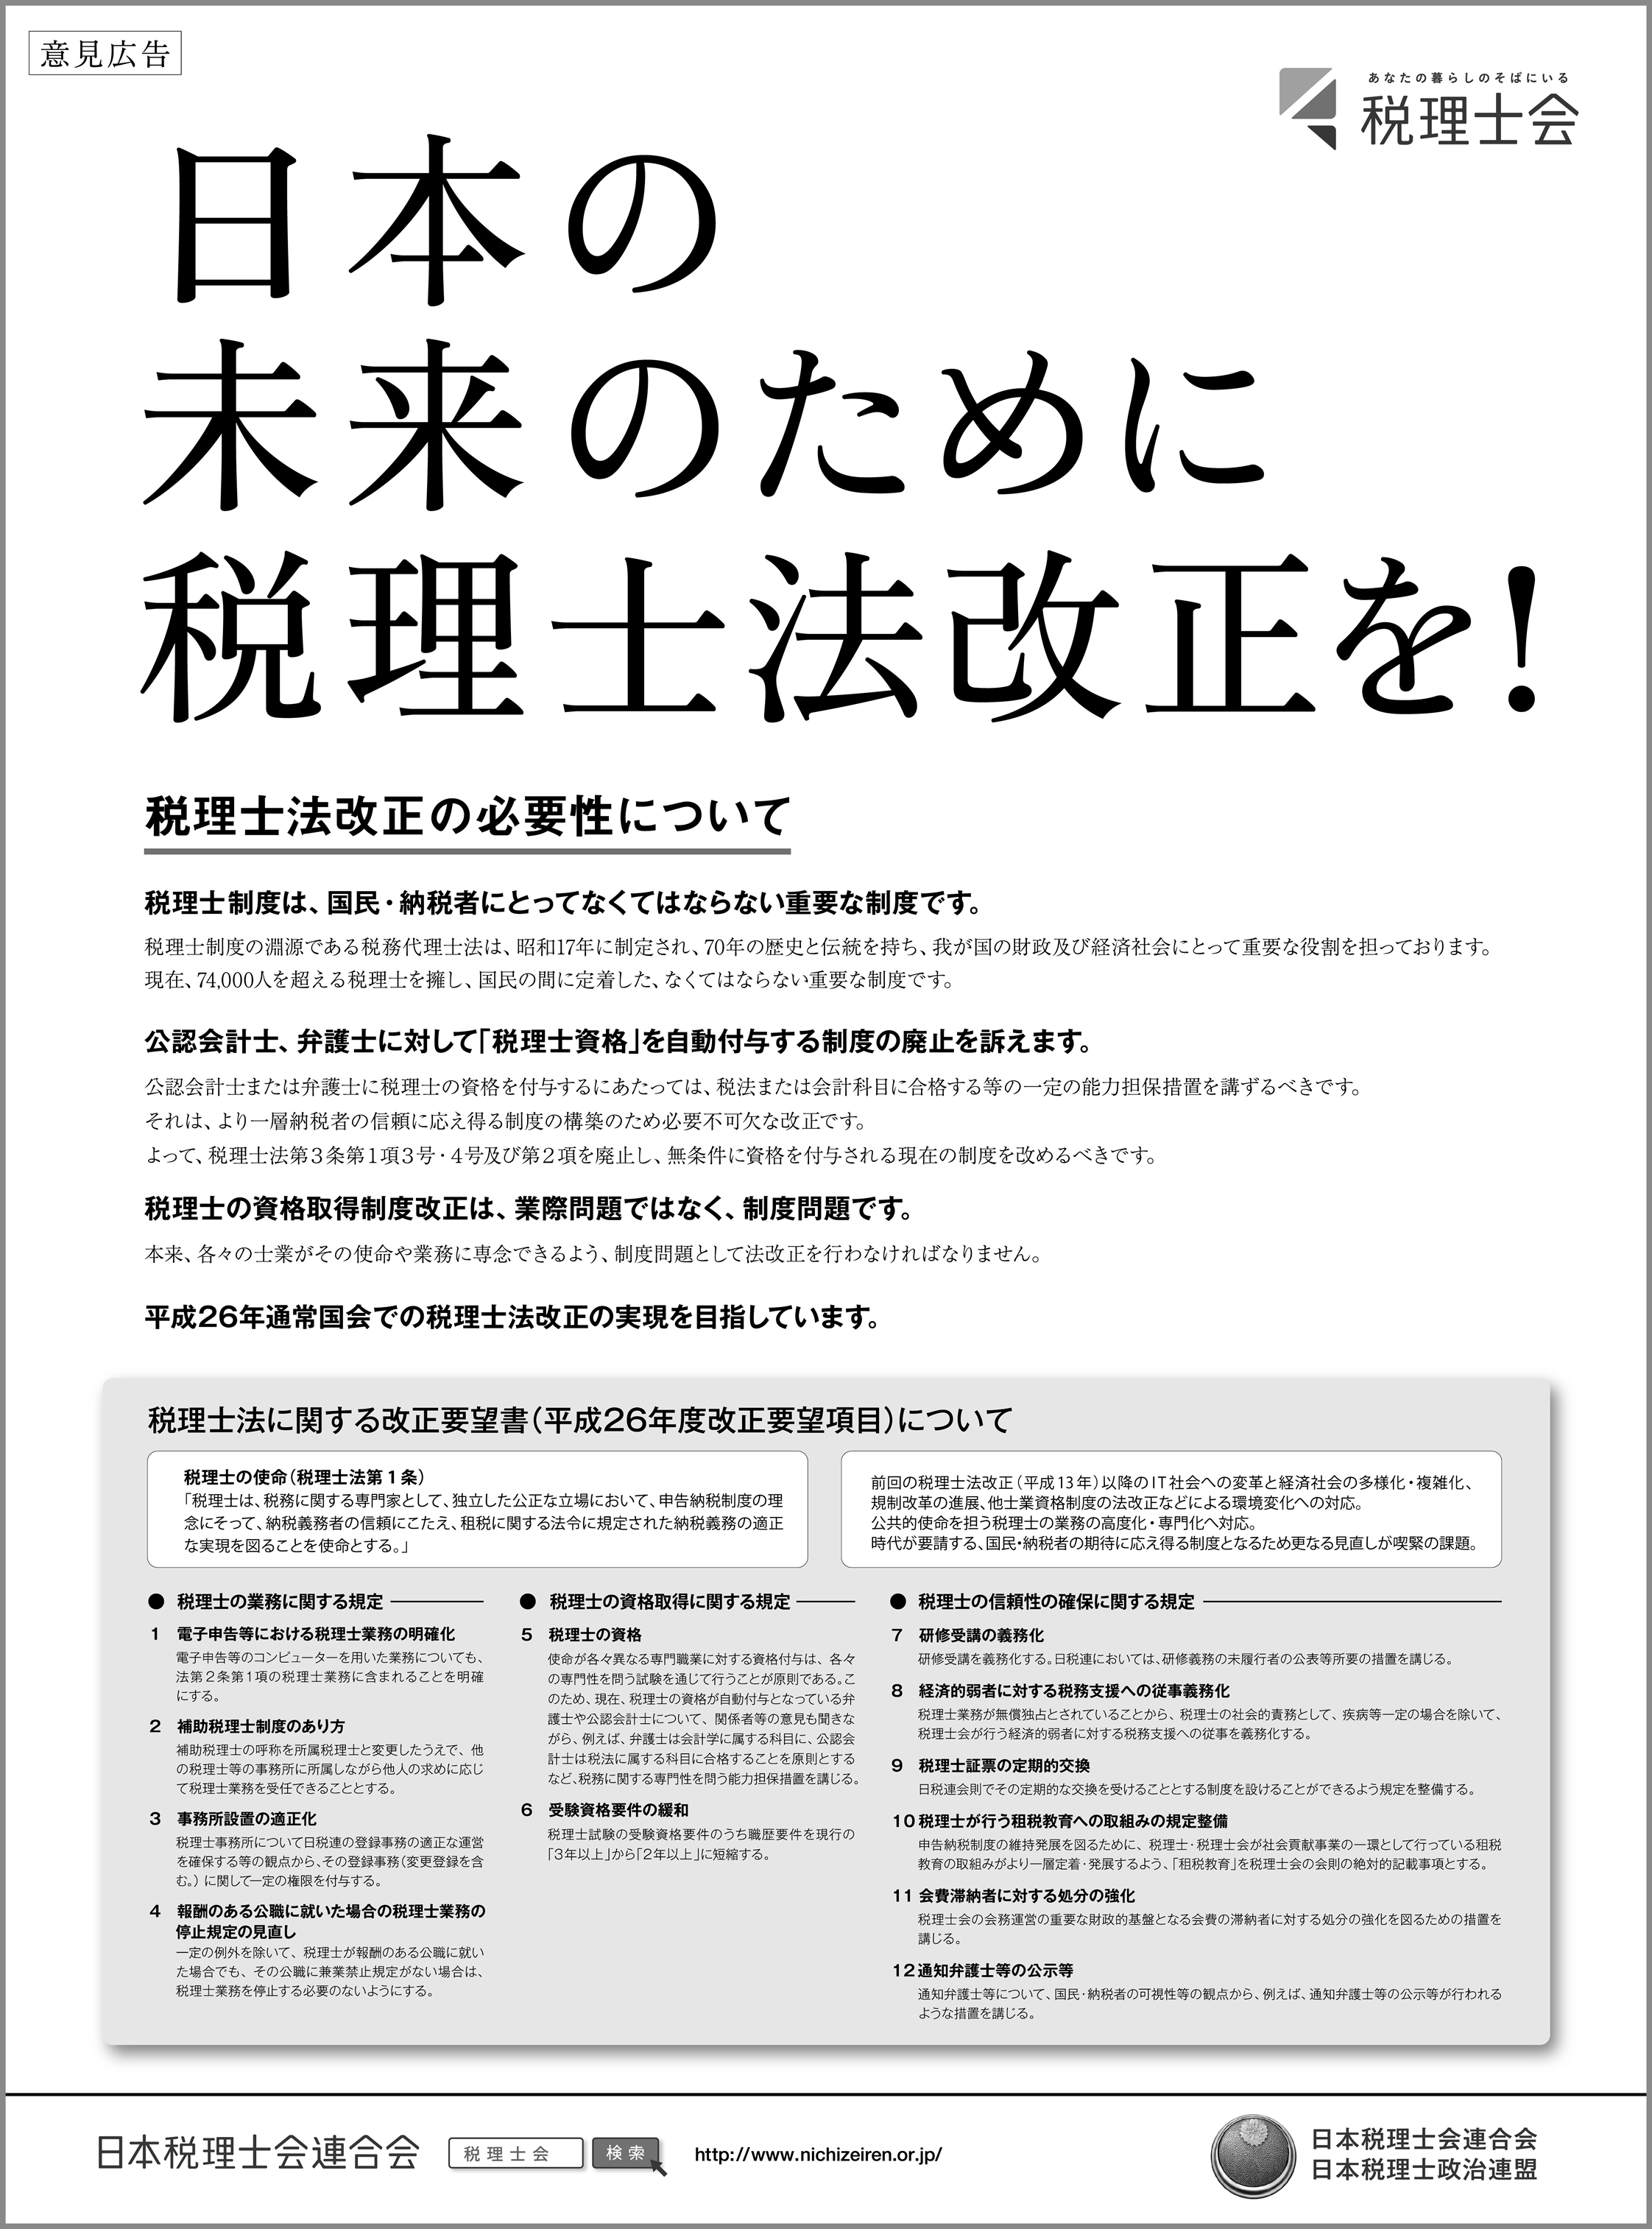 日経新聞意見広告